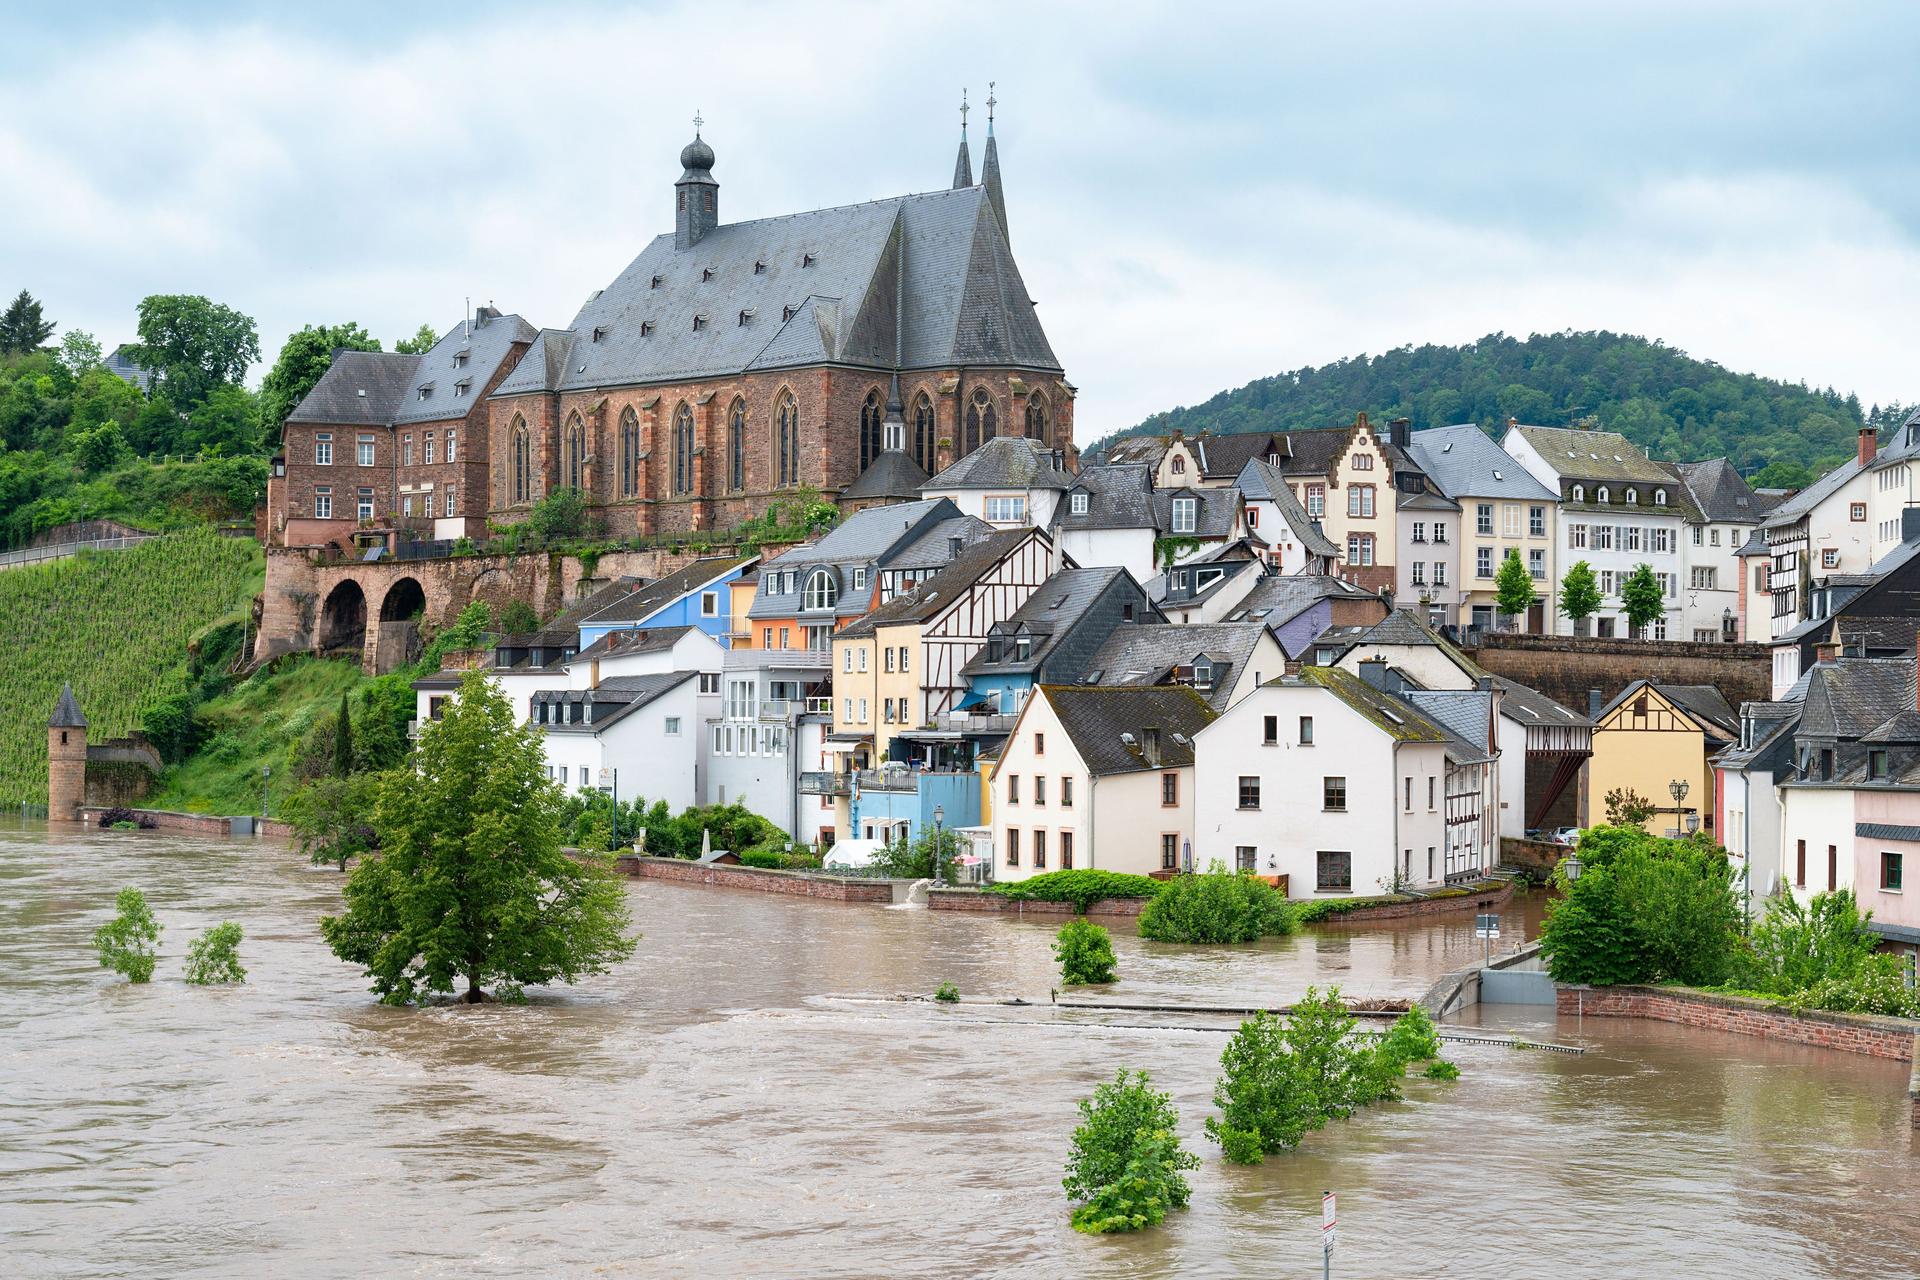 Ein überflutete Stadt am Fluss. Auf einem Hügel steht eine Kirche. Davor befinden sich überflutete Wohnhäuser.